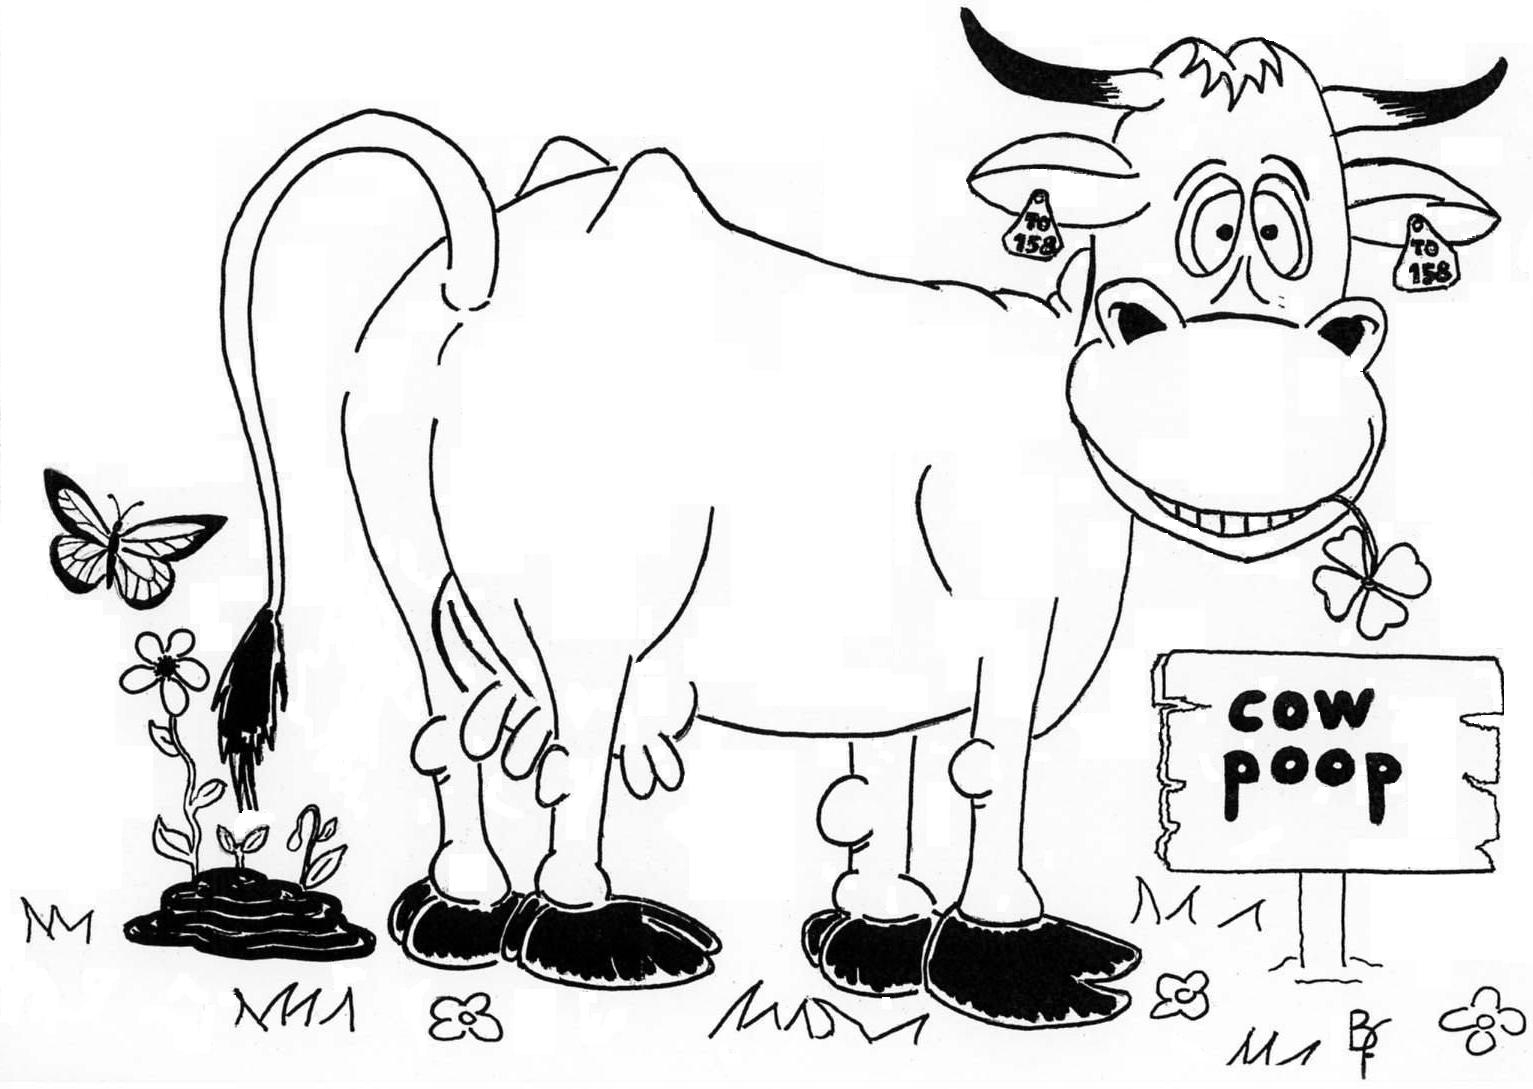 Spopola la “Cow poop”, ovvero la mucca da cacca!